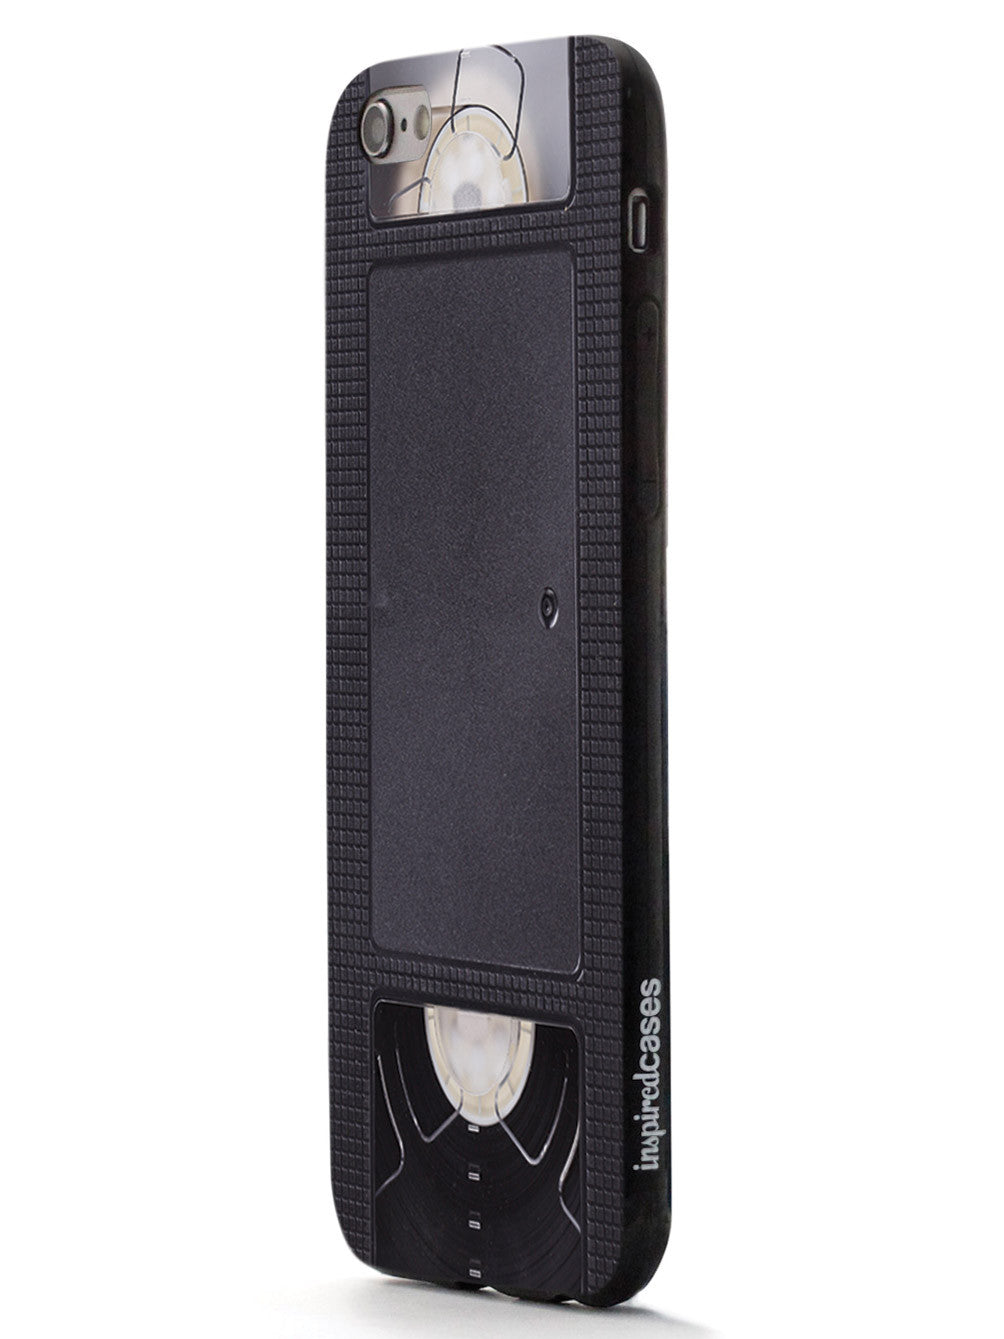 VHS Tape Vintage Case